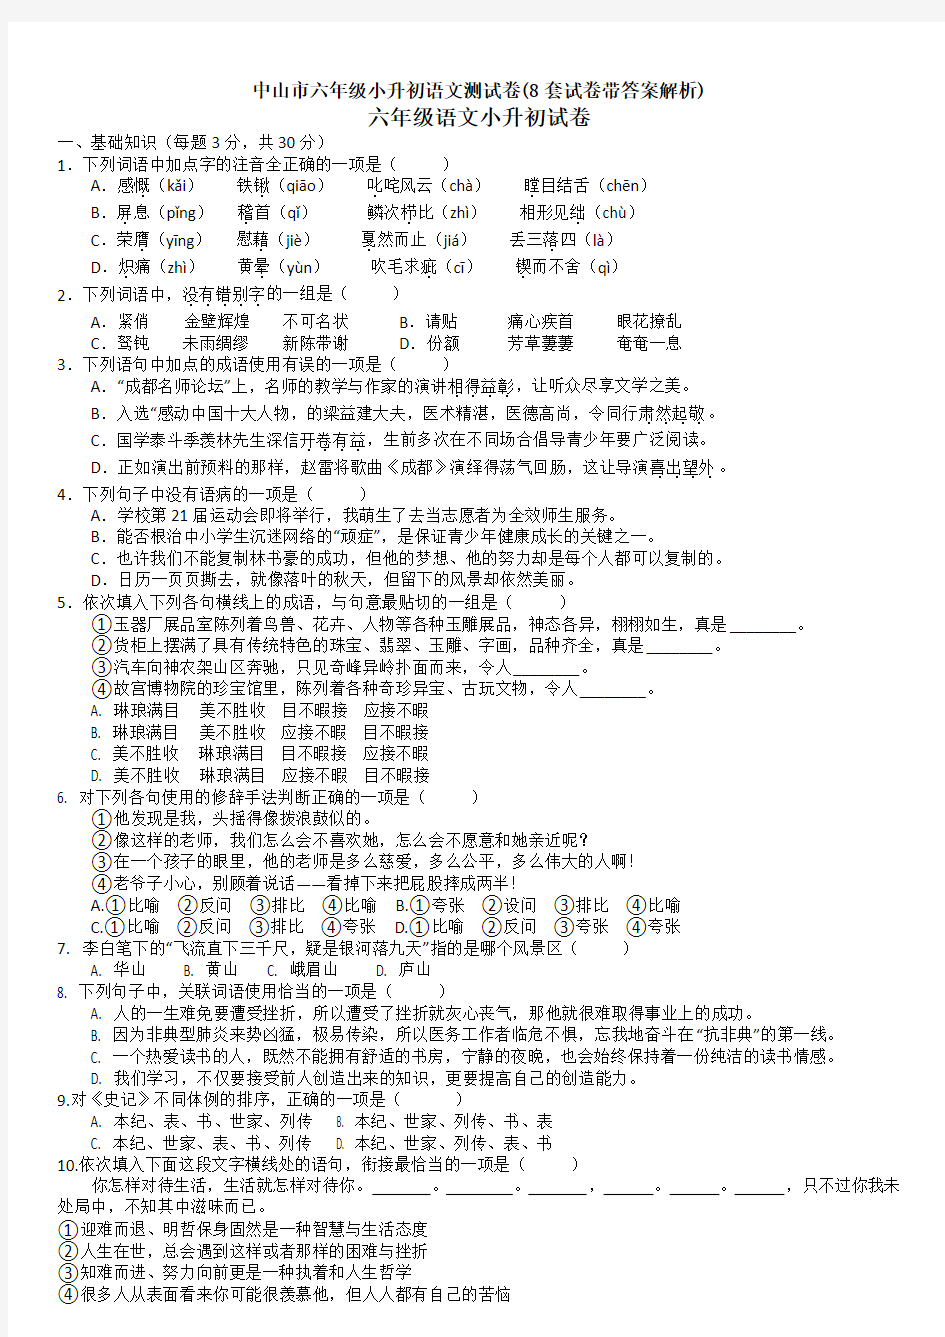 中山市六年级小升初语文测试卷(8套试卷带答案解析)